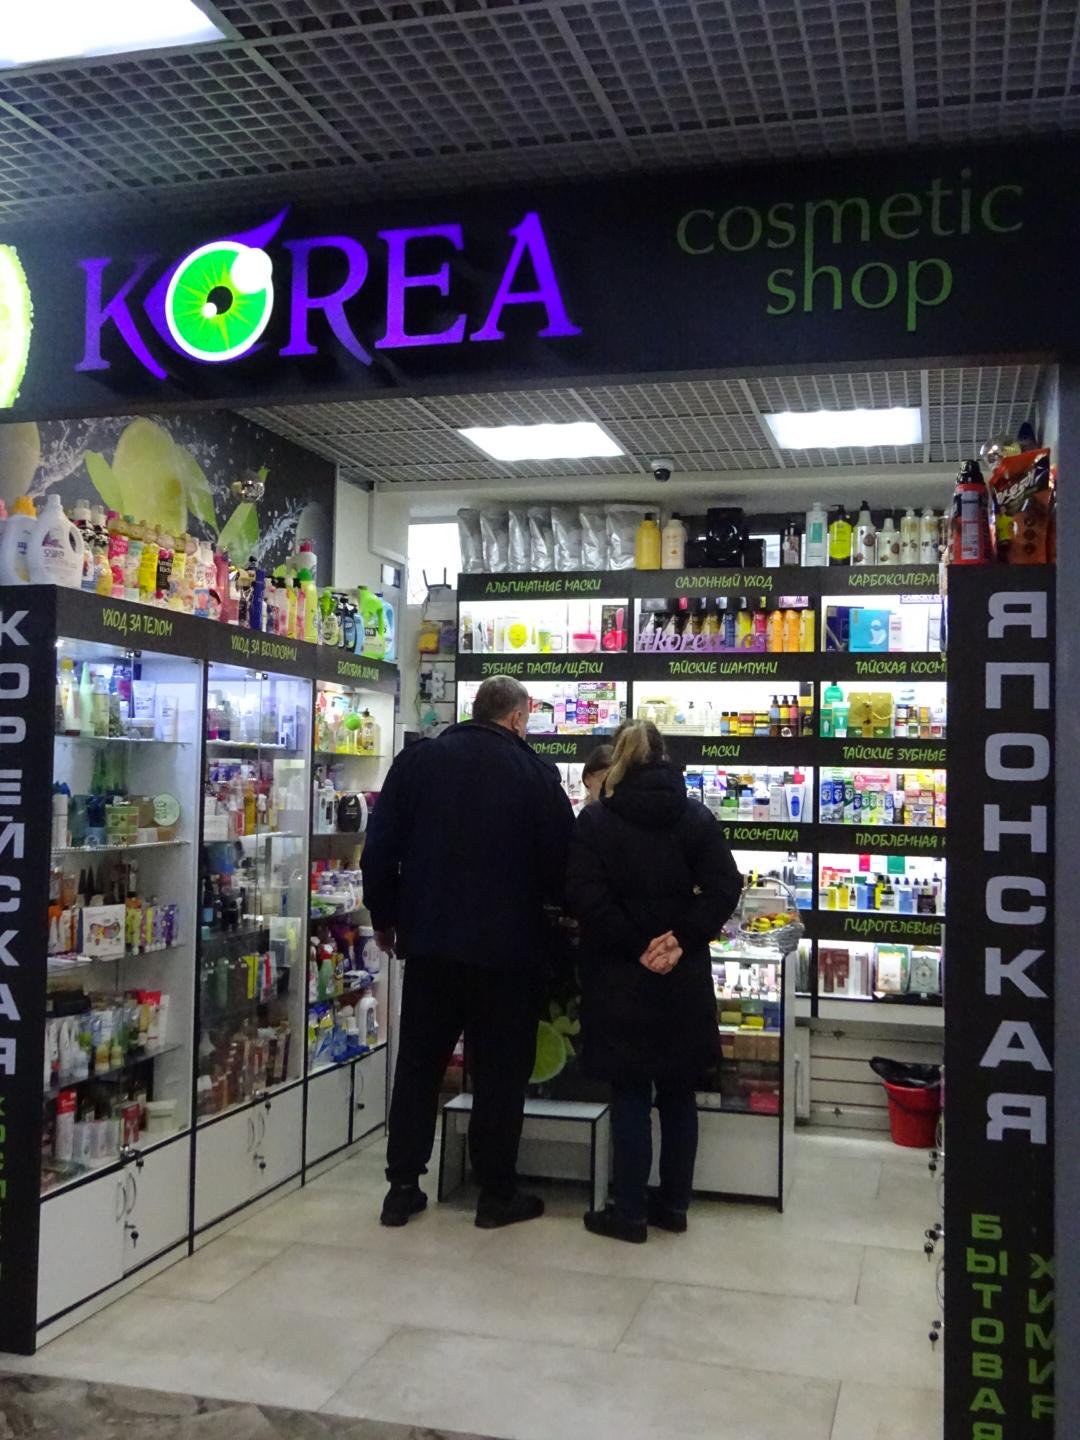 Korea cosmetic shop, магазин косметики, улица 3-е Почтовое отделение, 53а, 1 этаж, справа от центральной лестницы